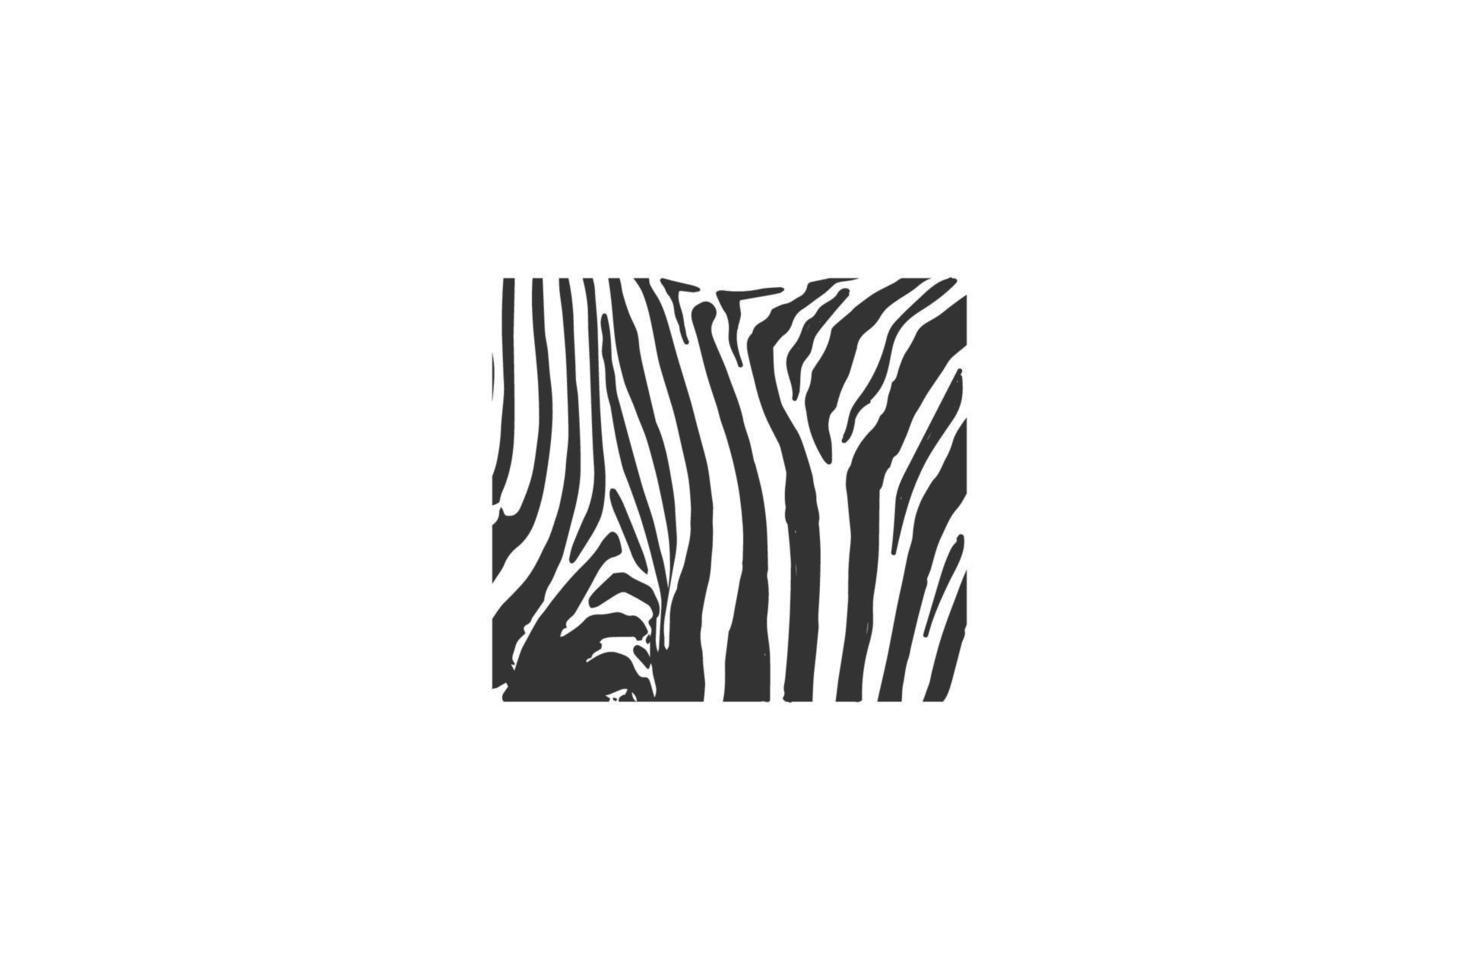 Motivo de cebra blanco y negro cuadrado retro para vector de diseño de logotipo de safari salvaje africano